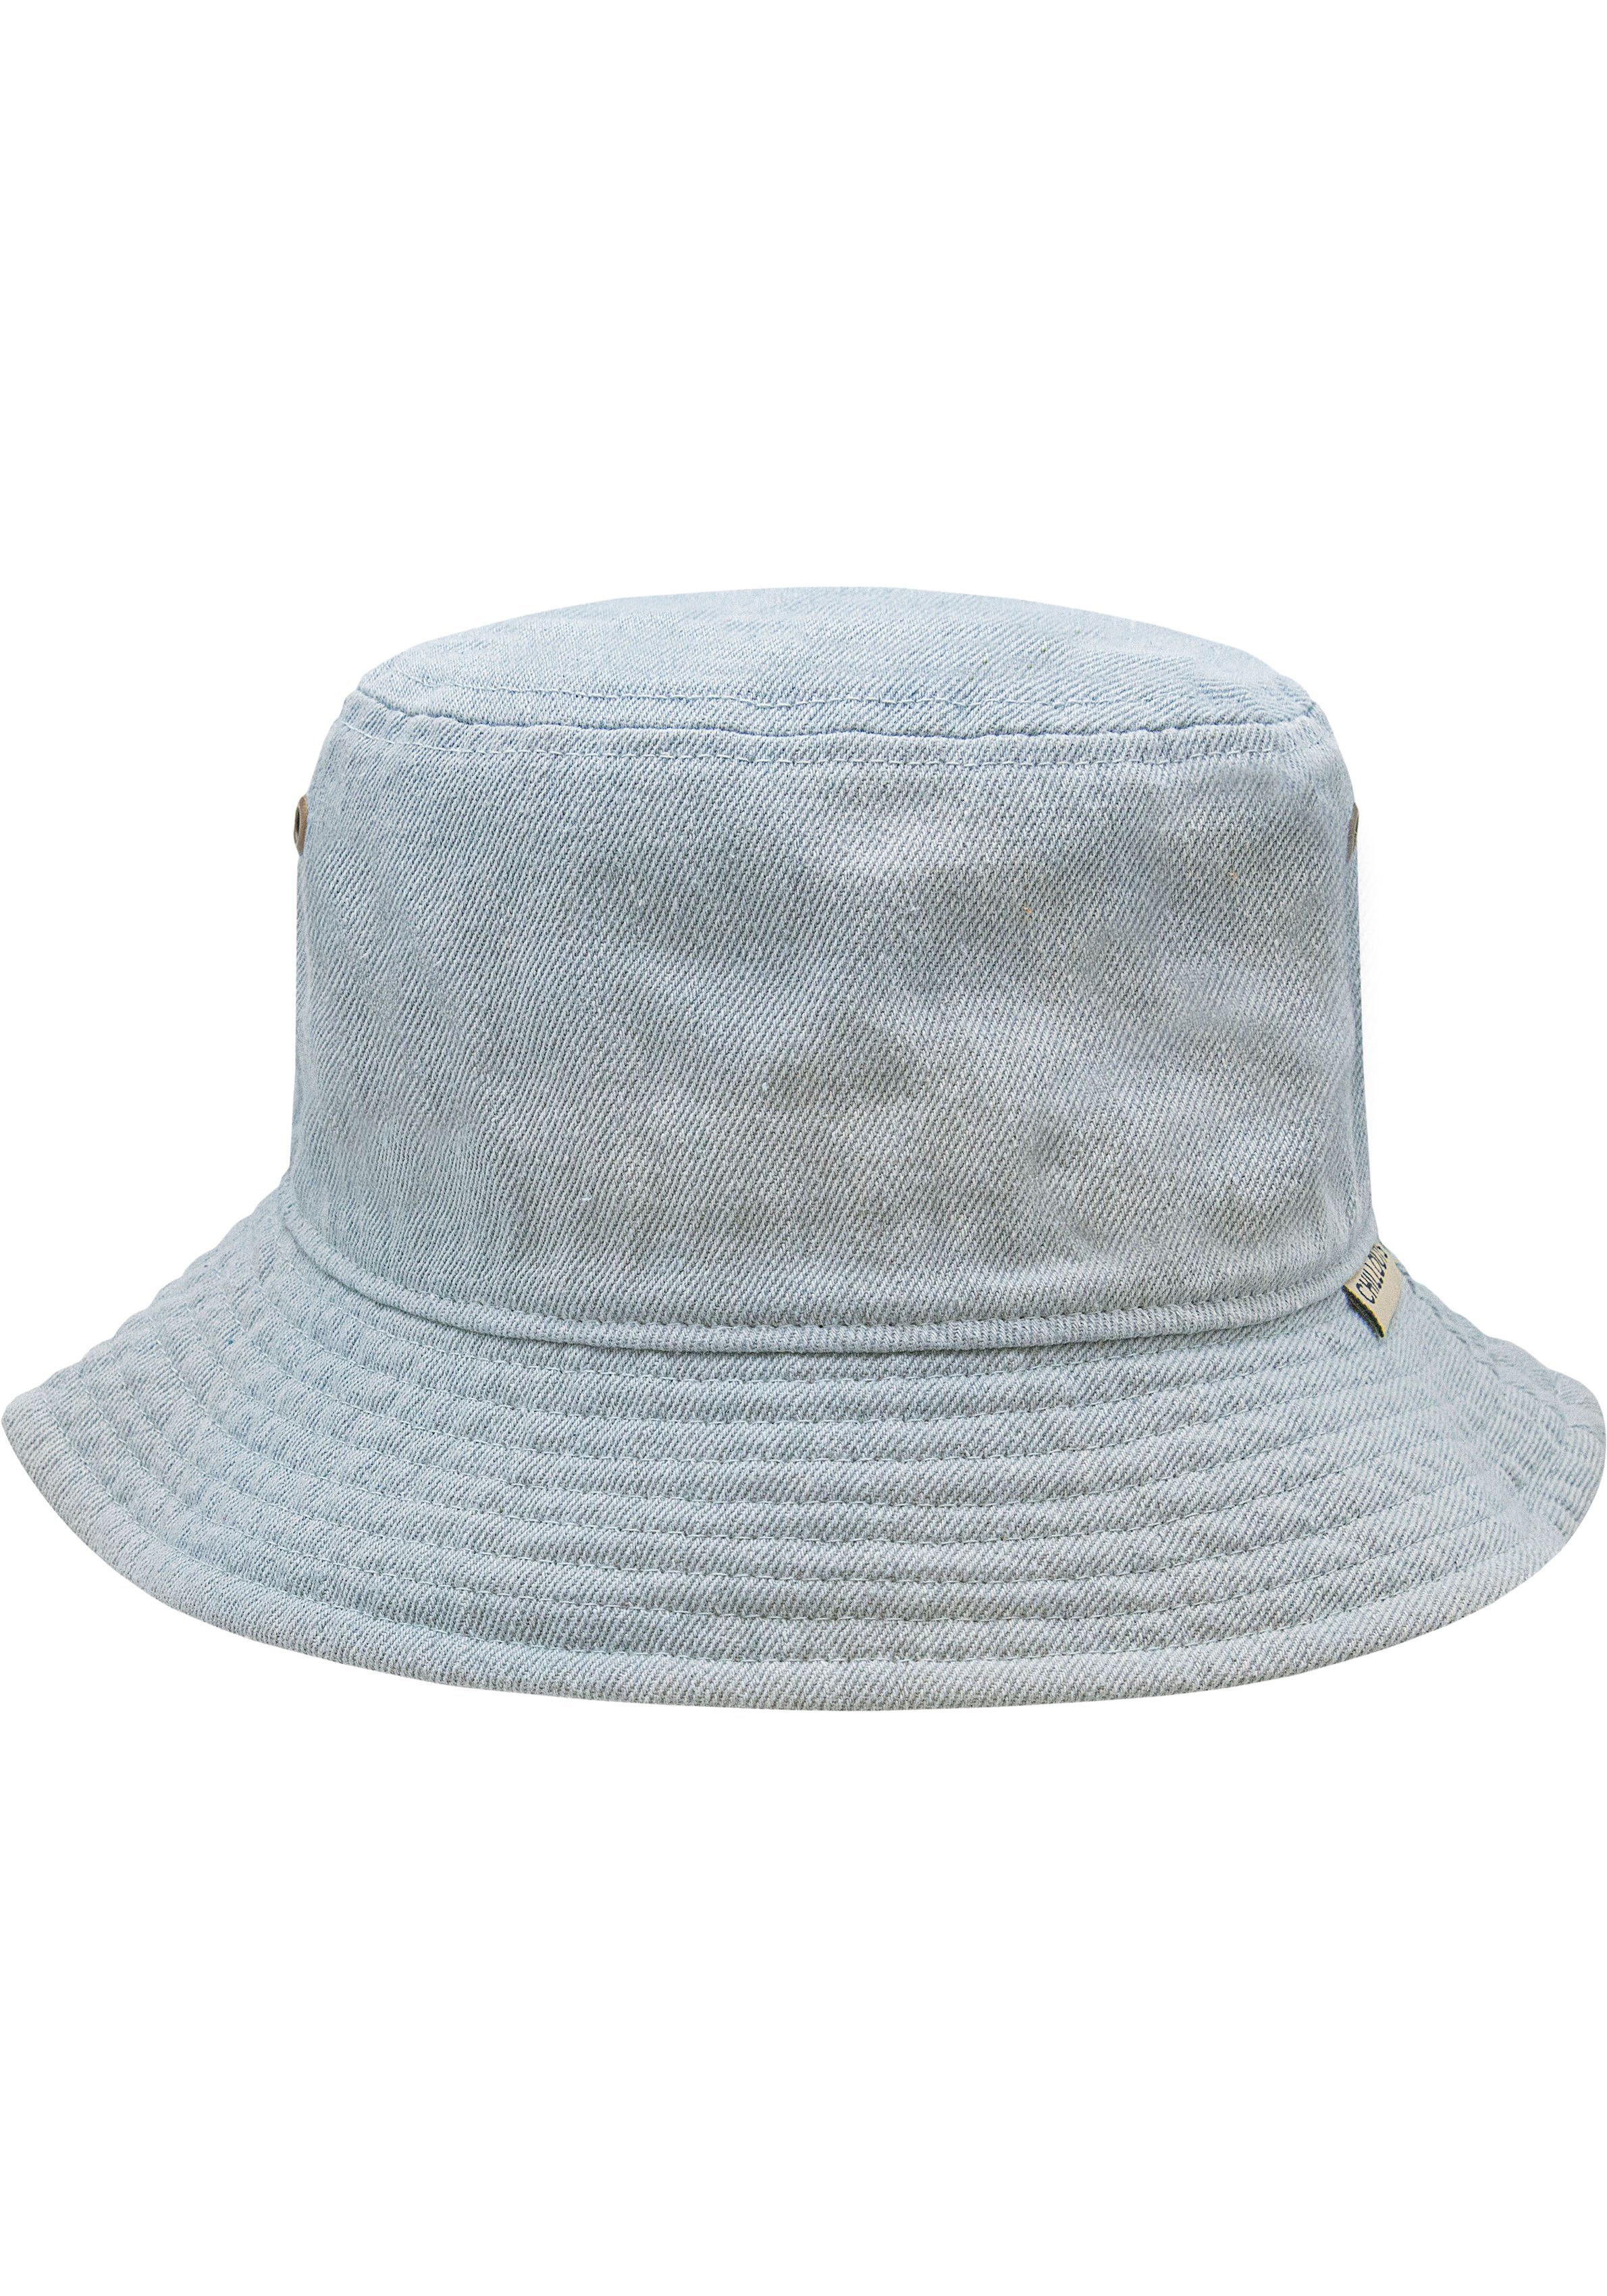 Fischerhut Braga chillouts Hat hellblau